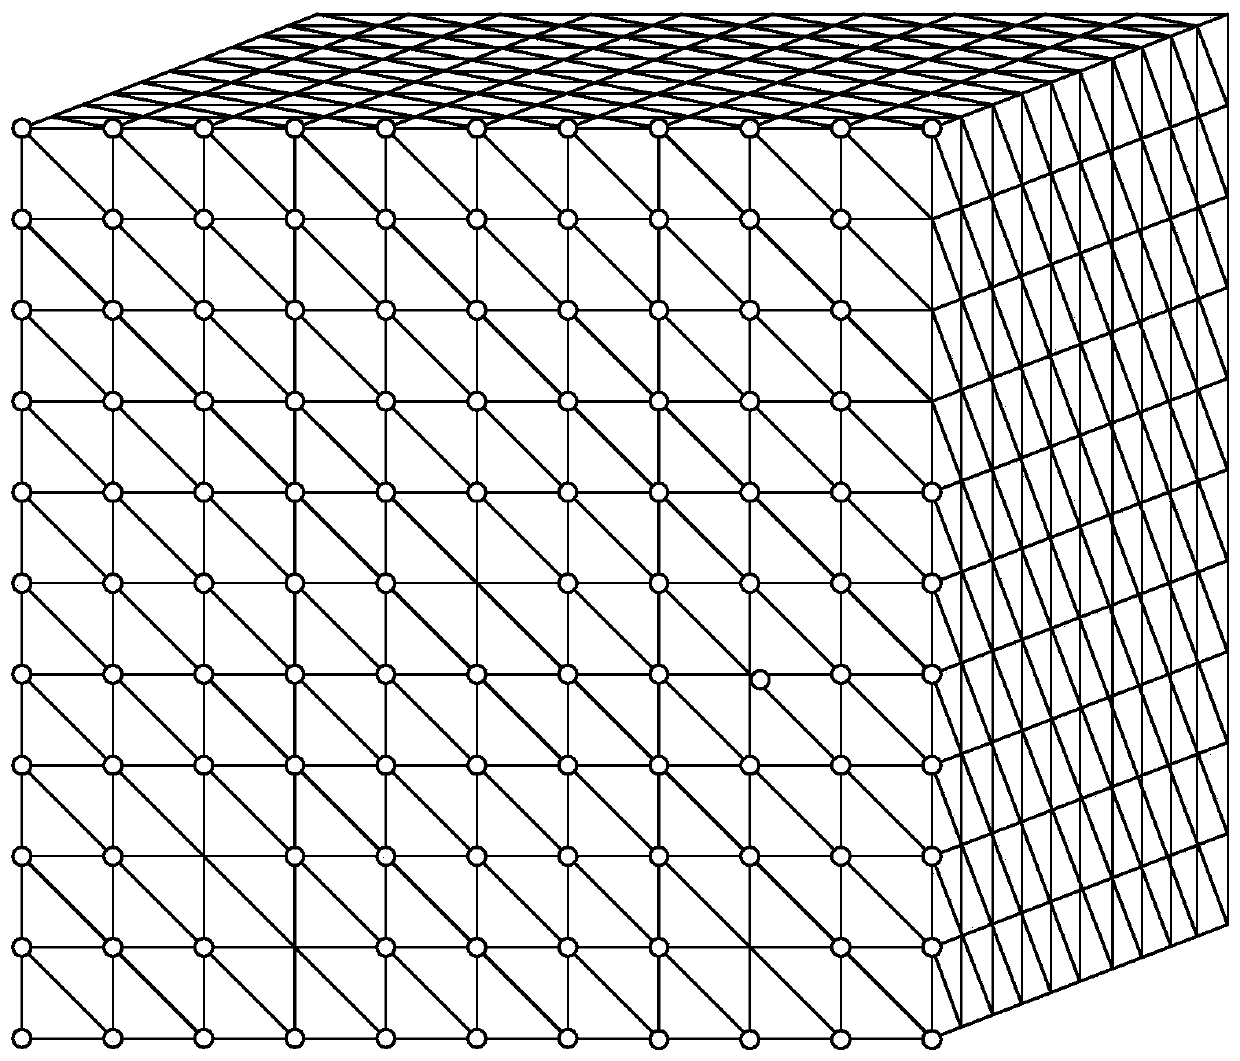 Ultrasonic aerial tactile rendering method based on three-dimensional grid model